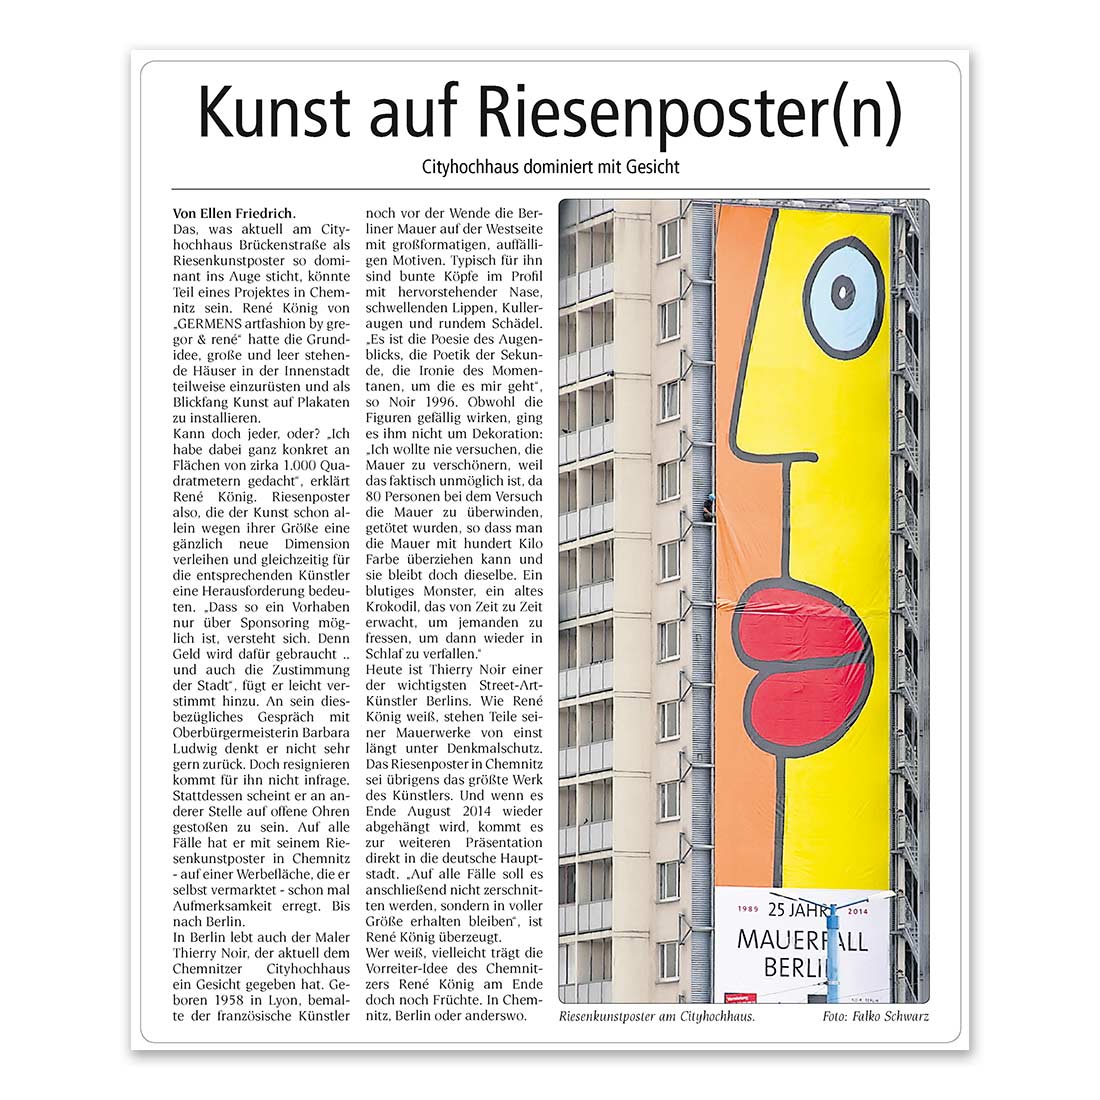 GERMENS artfashion - Wochenspiegel - 25.06.2014